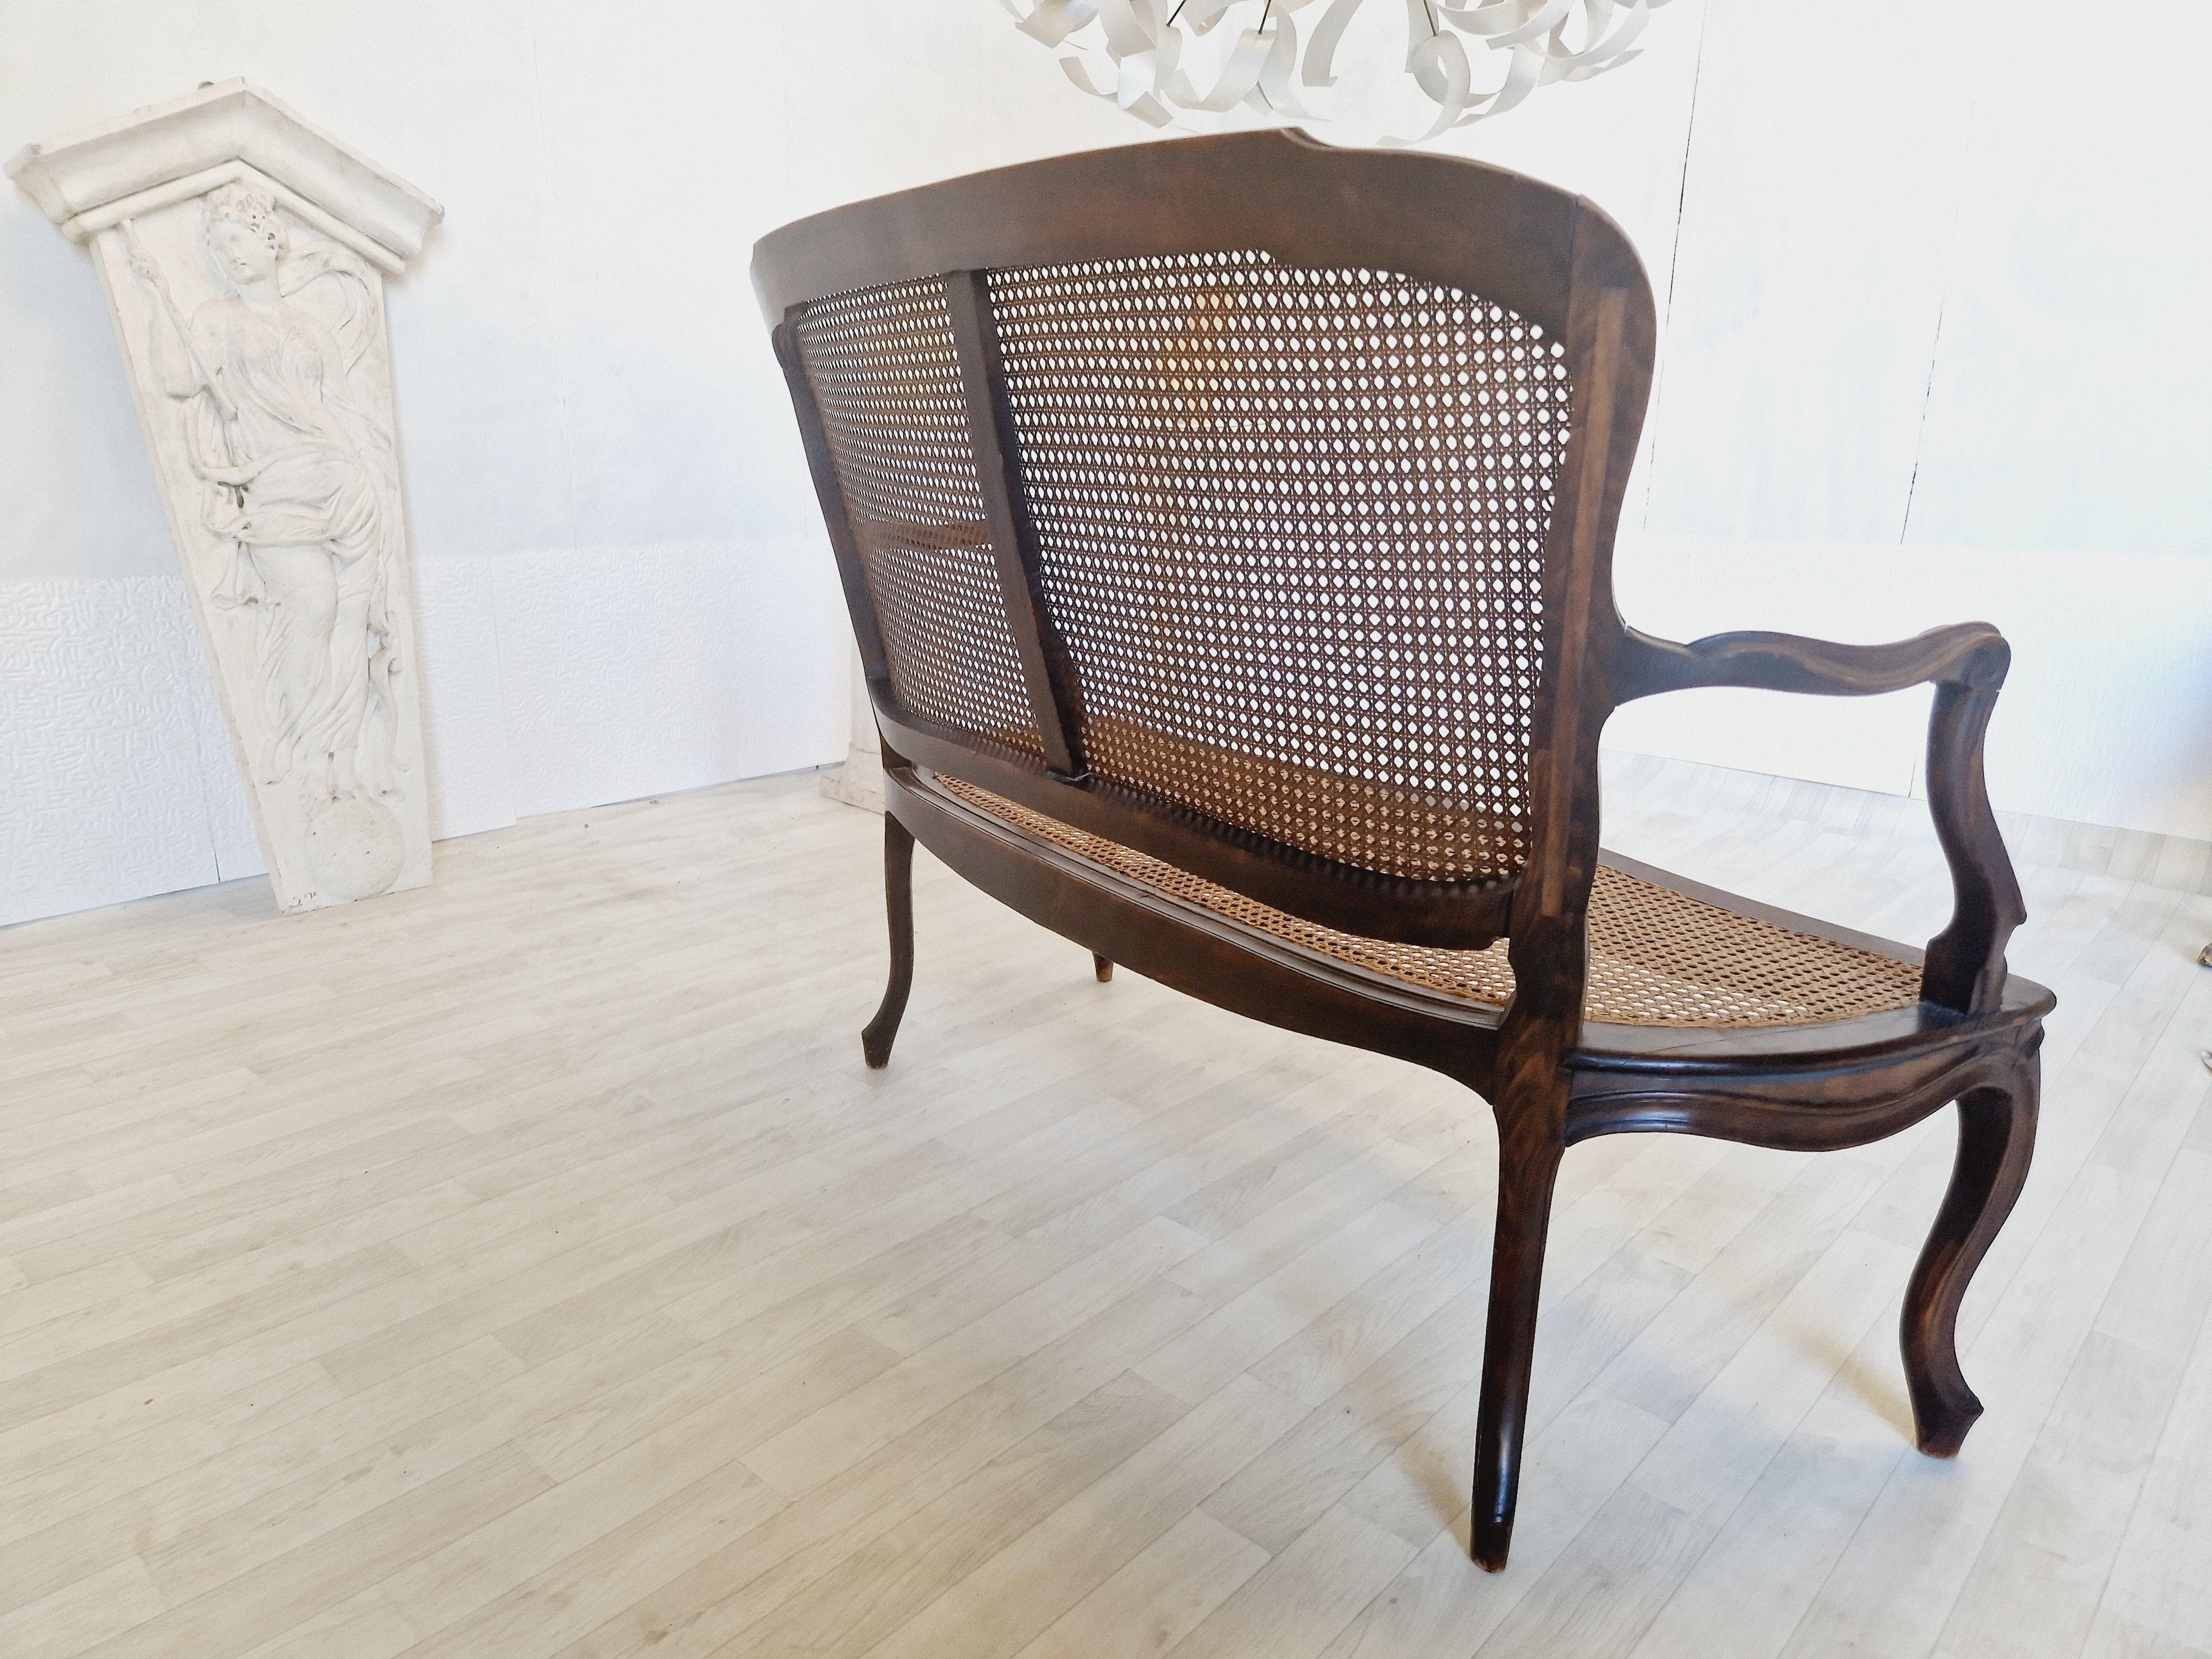 Retrouvez le charme du XIXe siècle avec cet élégant ensemble de salon Rocaille. Fabriqué en noyer de haute qualité avec des sièges et des dossiers en cannage, cet ensemble de style Louis XV comprend un canapé et deux chaises, parfaits pour n'importe